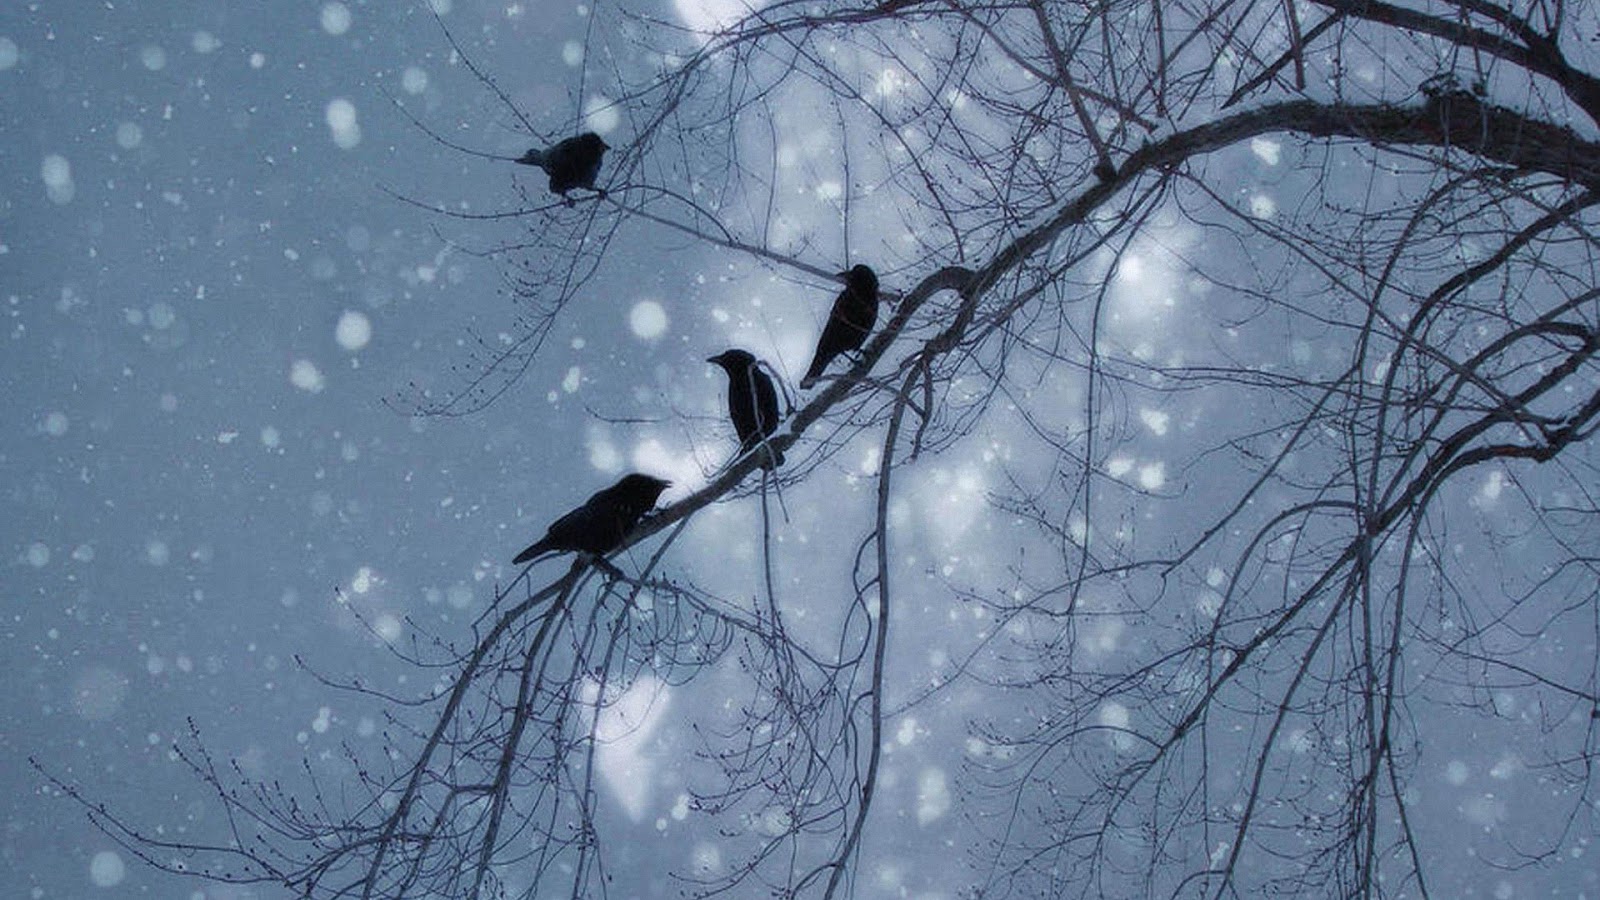 Далеко далеко улетели метели. Птицы на дереве зимой. Ворона на ветке зимой. Птицы в небе зимой. Ветки в снегу.